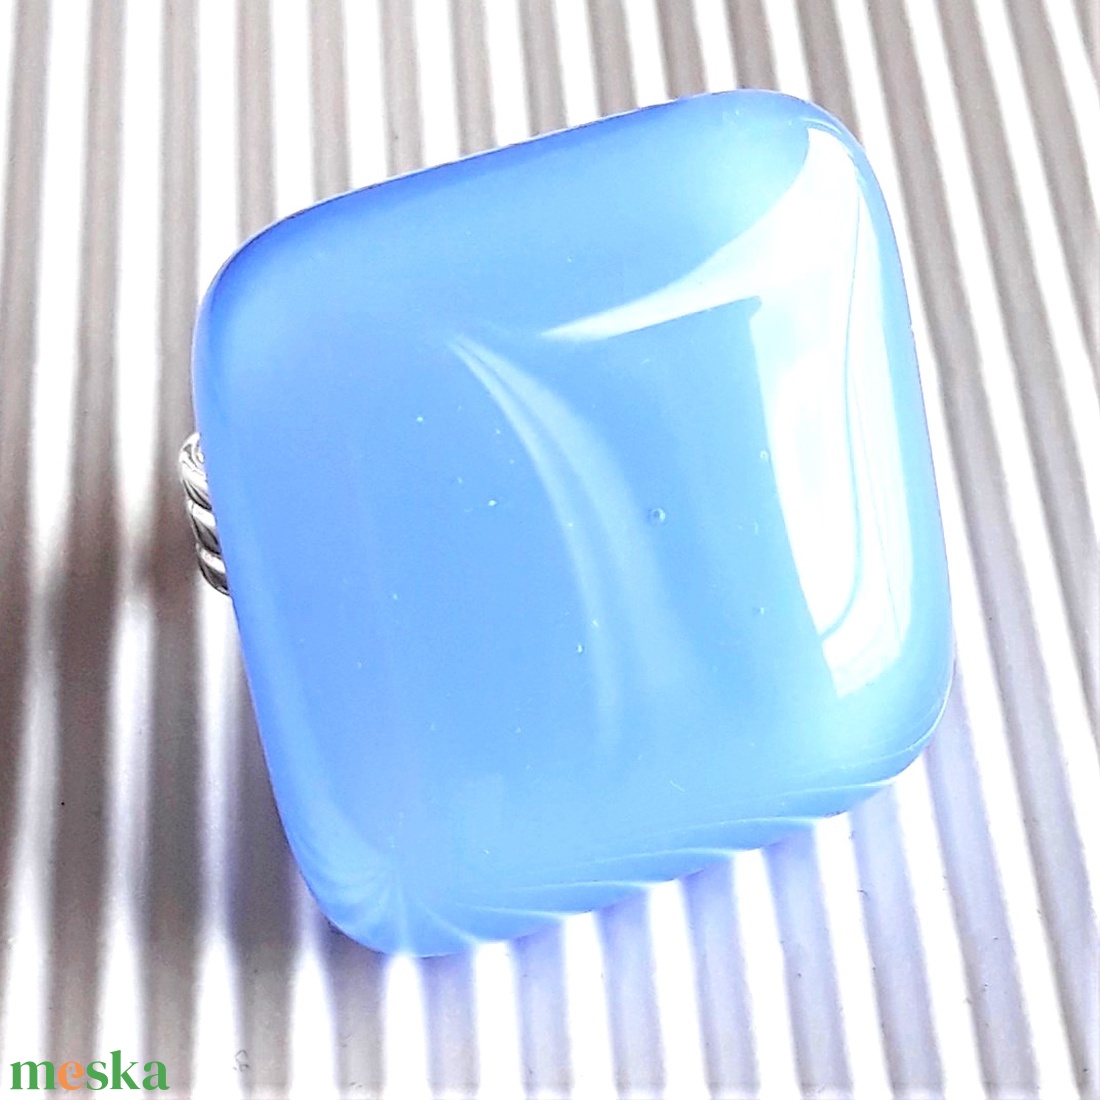 Levendula kék maxi üveg gyűrű, üvegékszer - ékszer - gyűrű - statement gyűrű - Meska.hu